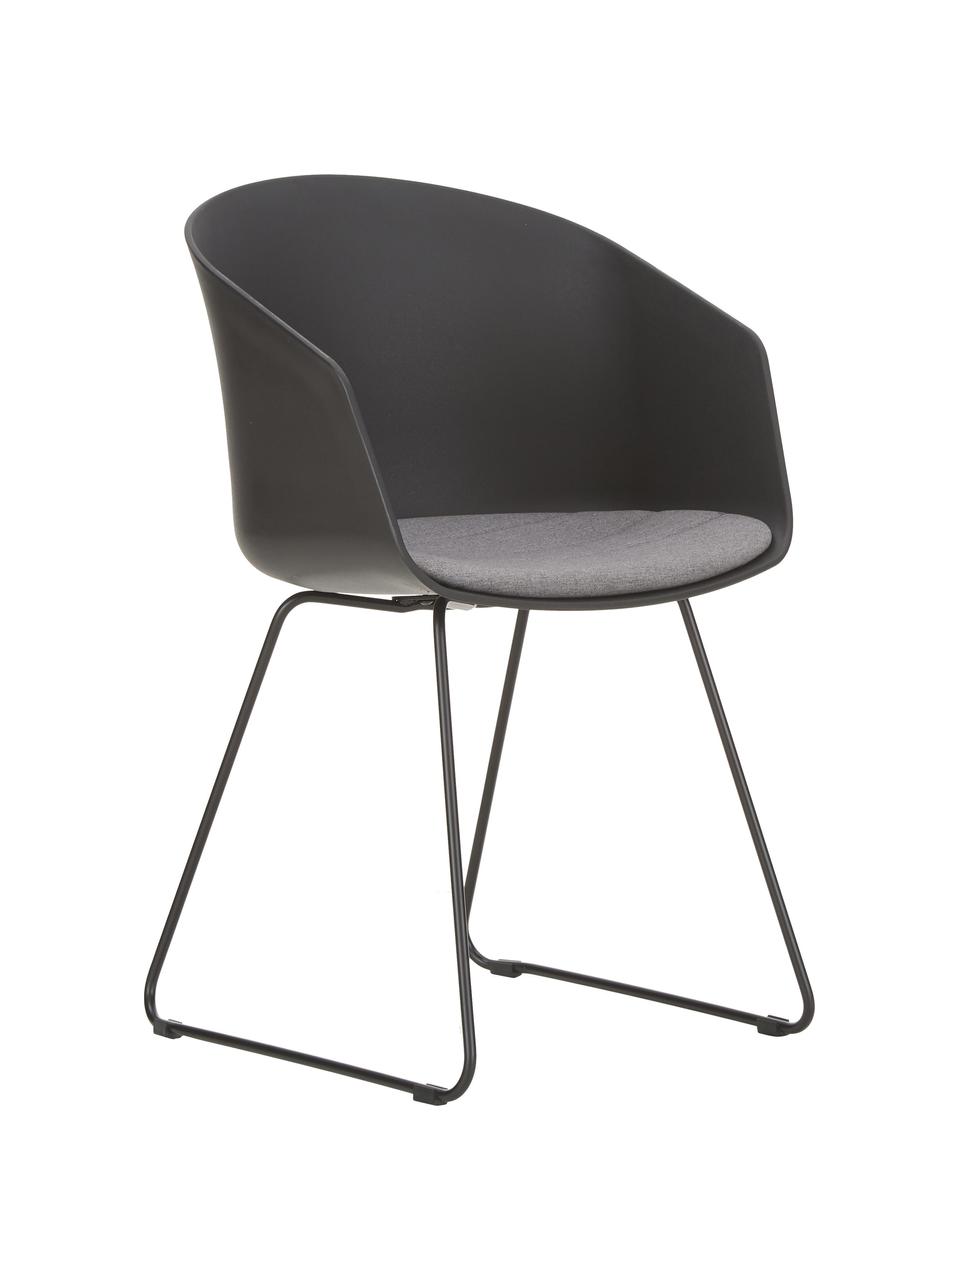 Kunststoff-Armlehnstühle Bogart mit Sitzkissen, 2 Stück, Sitzschale: Kunststoff, Bezug: Polyester, Beine: Metall, lackiert, Schwarz, B 51 x T 52 cm